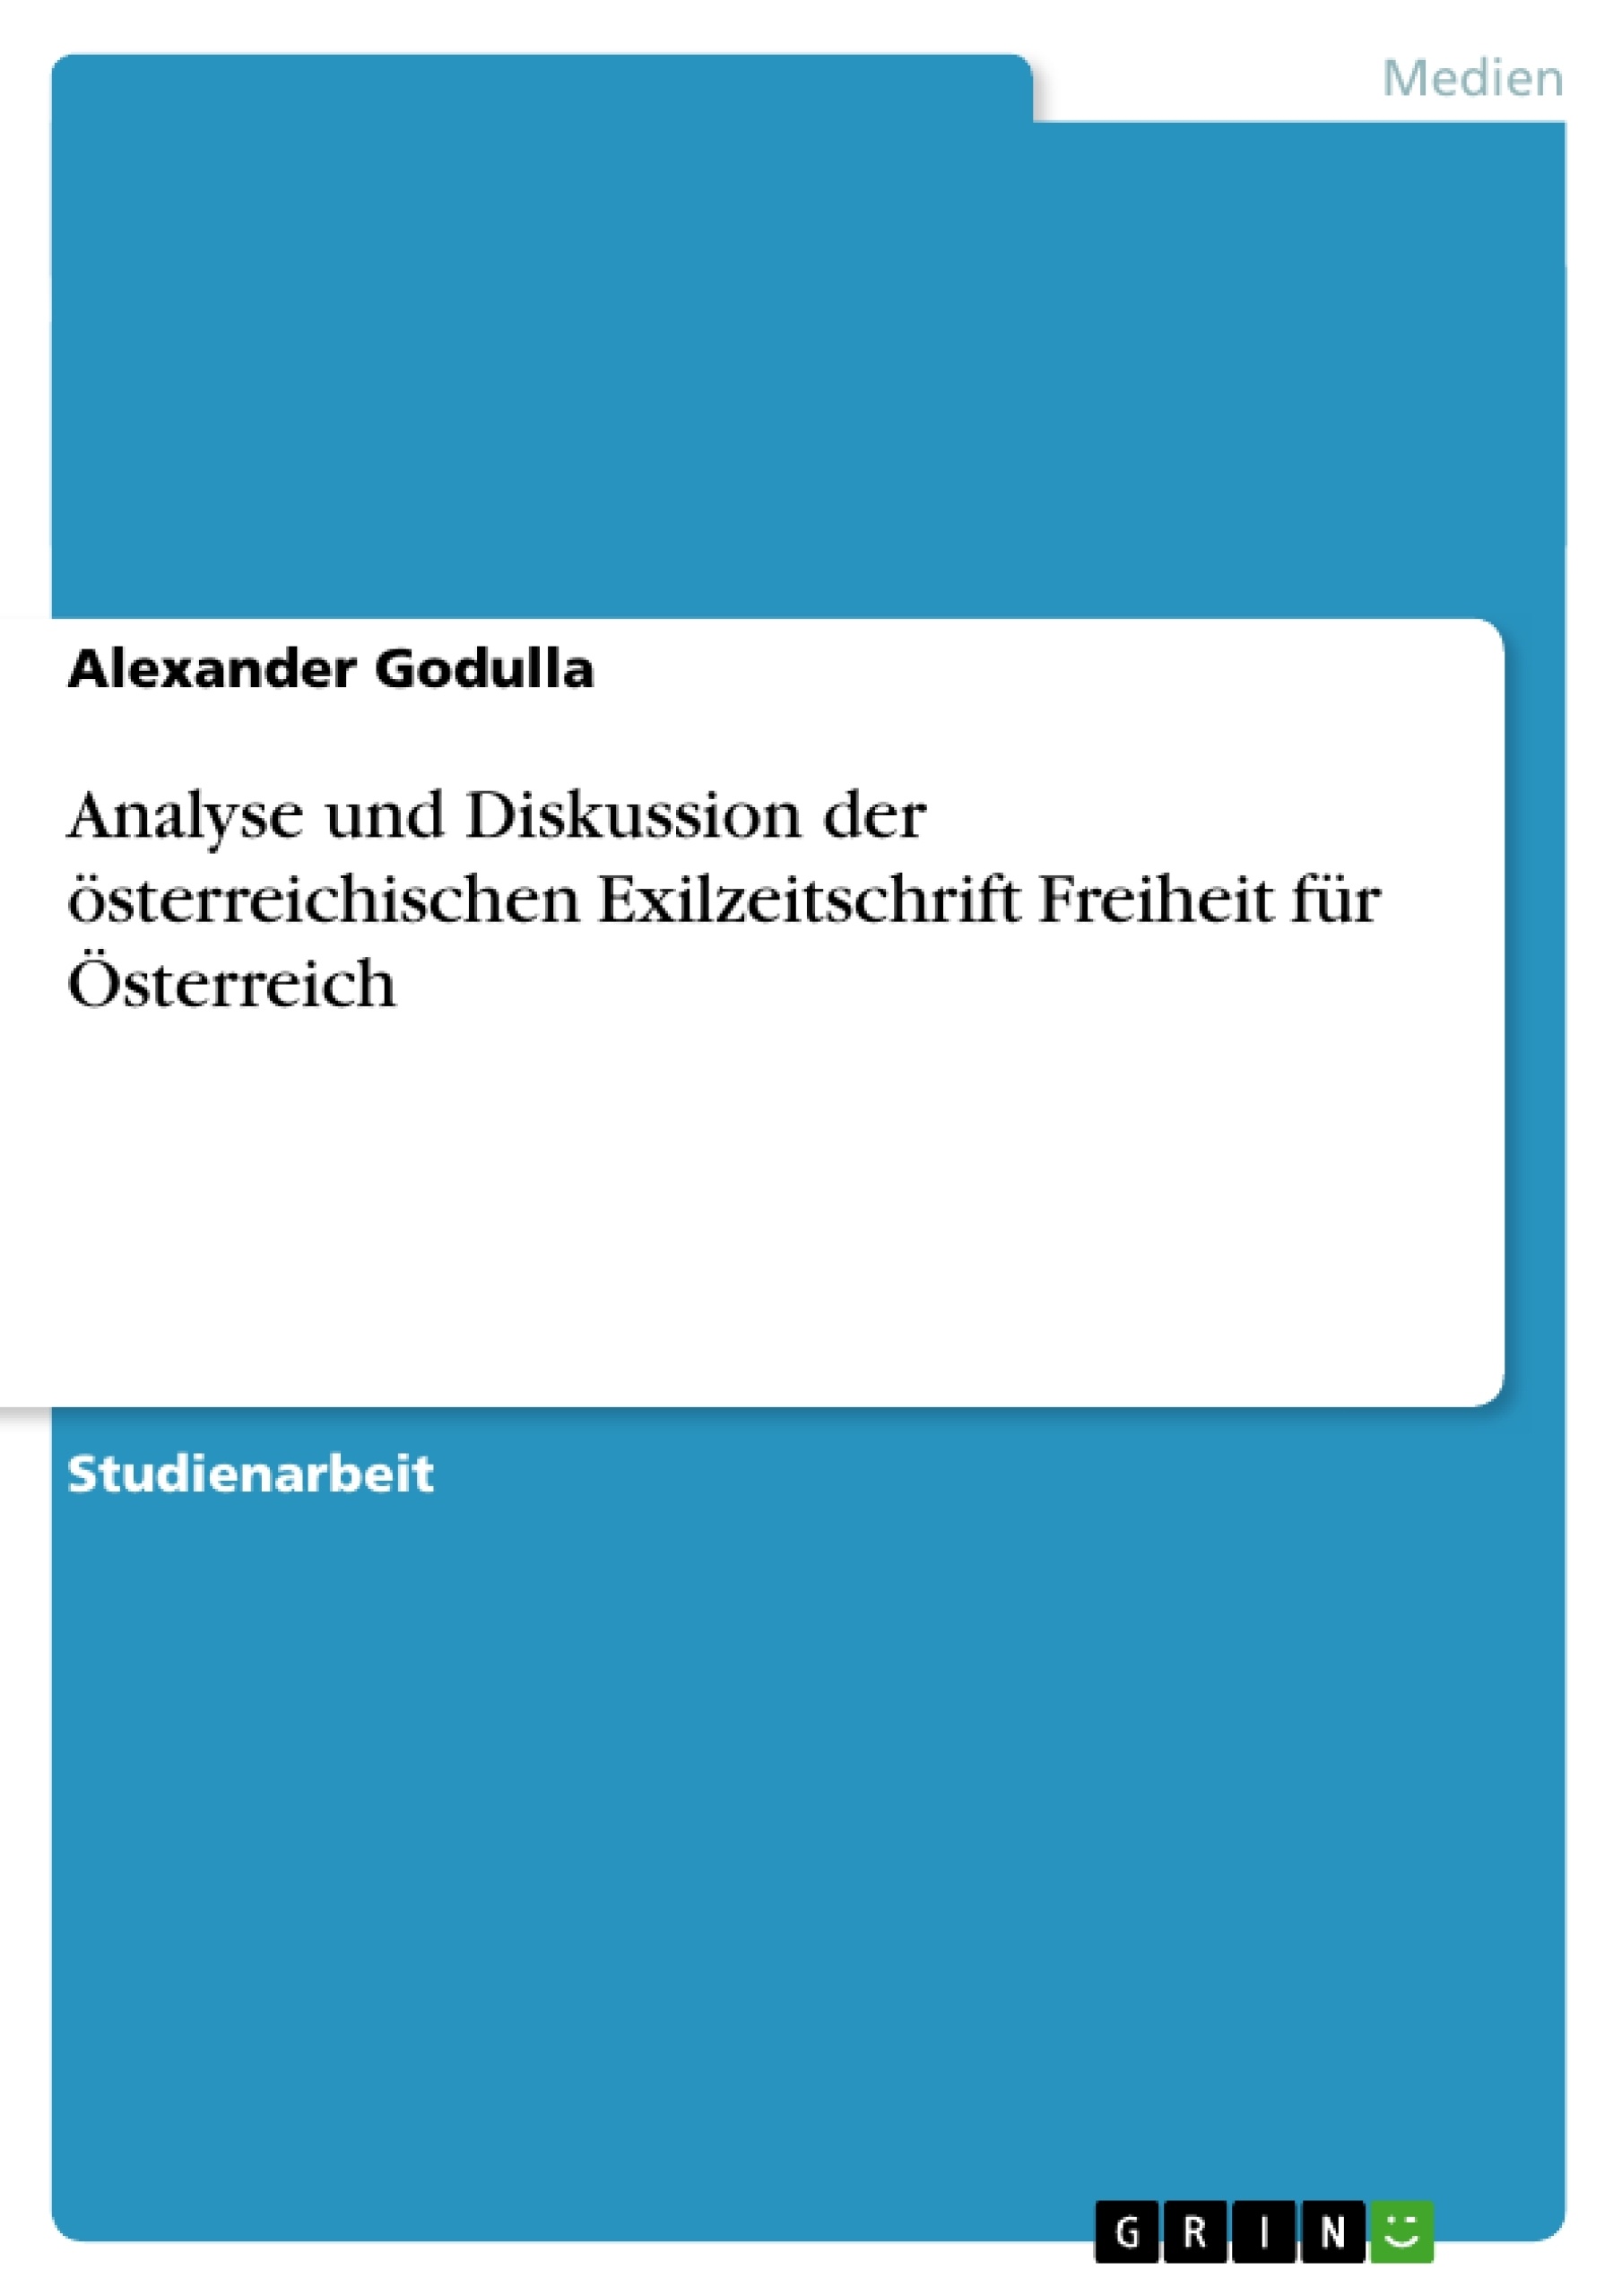 Título: Analyse und Diskussion der österreichischen Exilzeitschrift Freiheit für Österreich